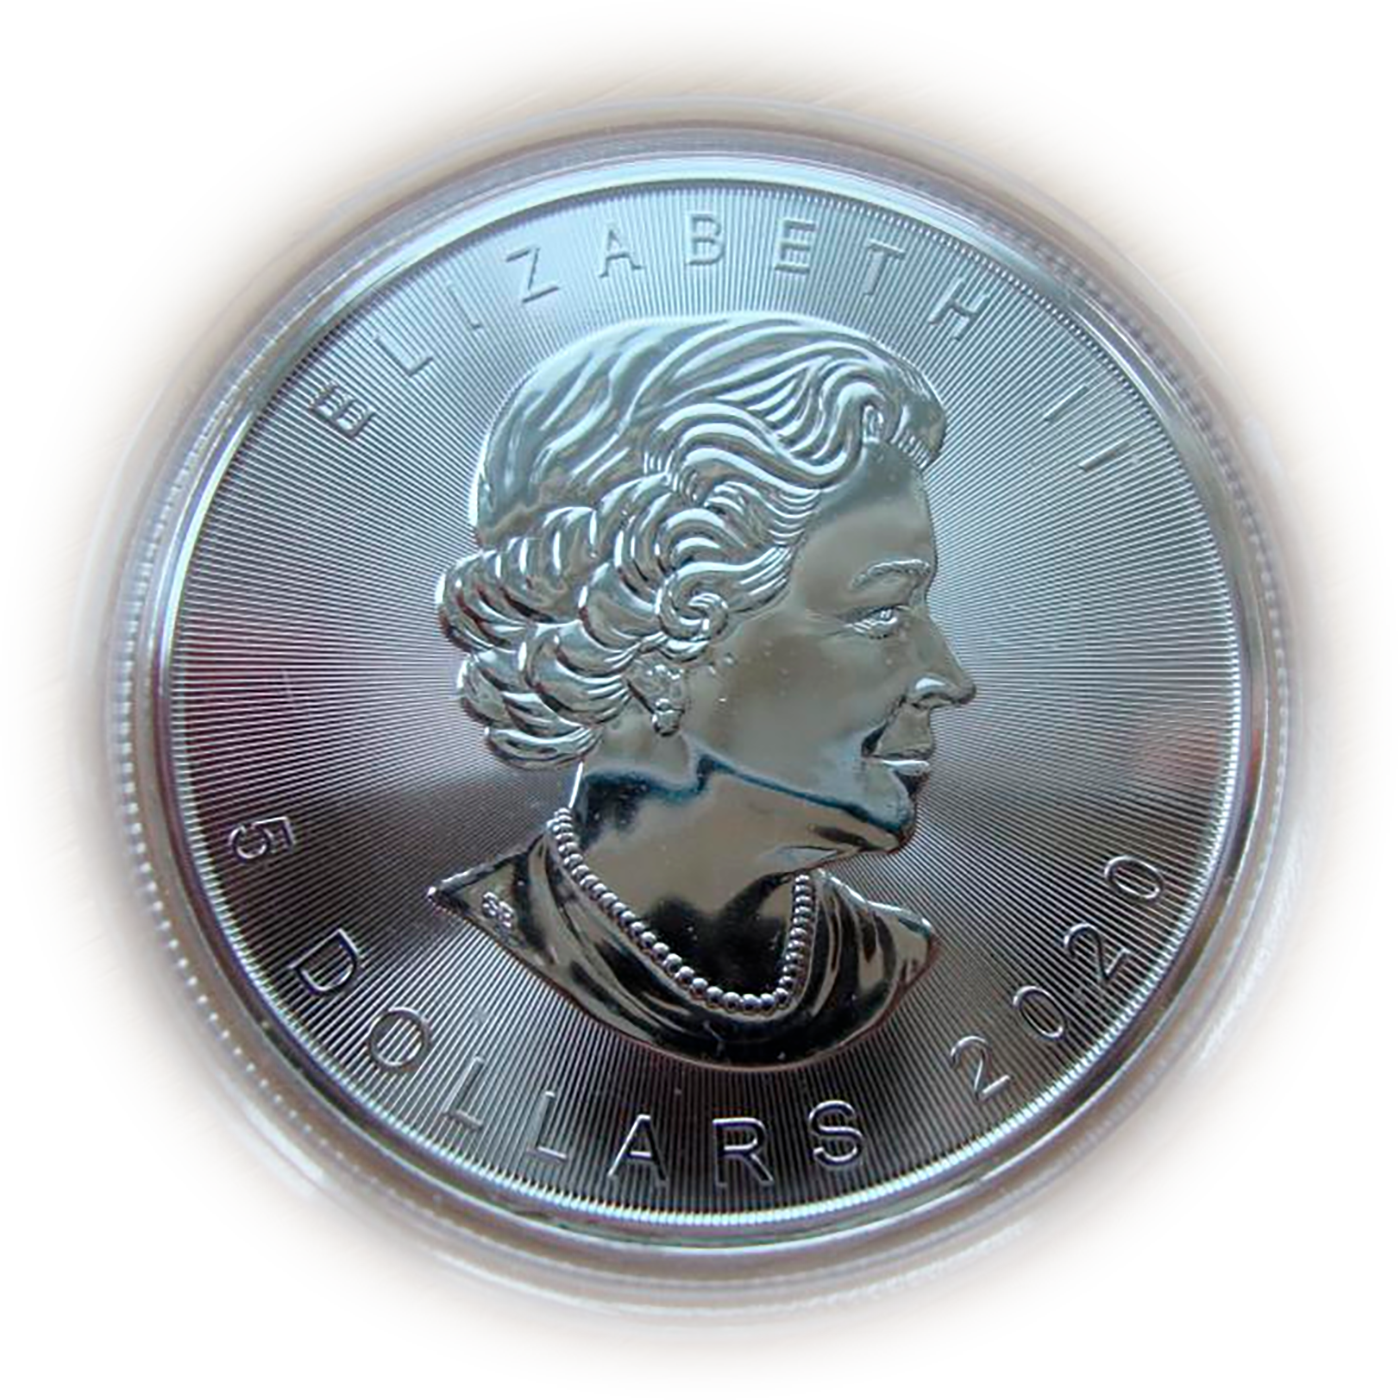 5 Долларов Канада серебро кленовый лист. Монета Канада 2020 кленовый лист. 5 Долларов 1995 Канада «кленовый лист». 5 Долларов Канада. Титаник. 1998 Sp69.